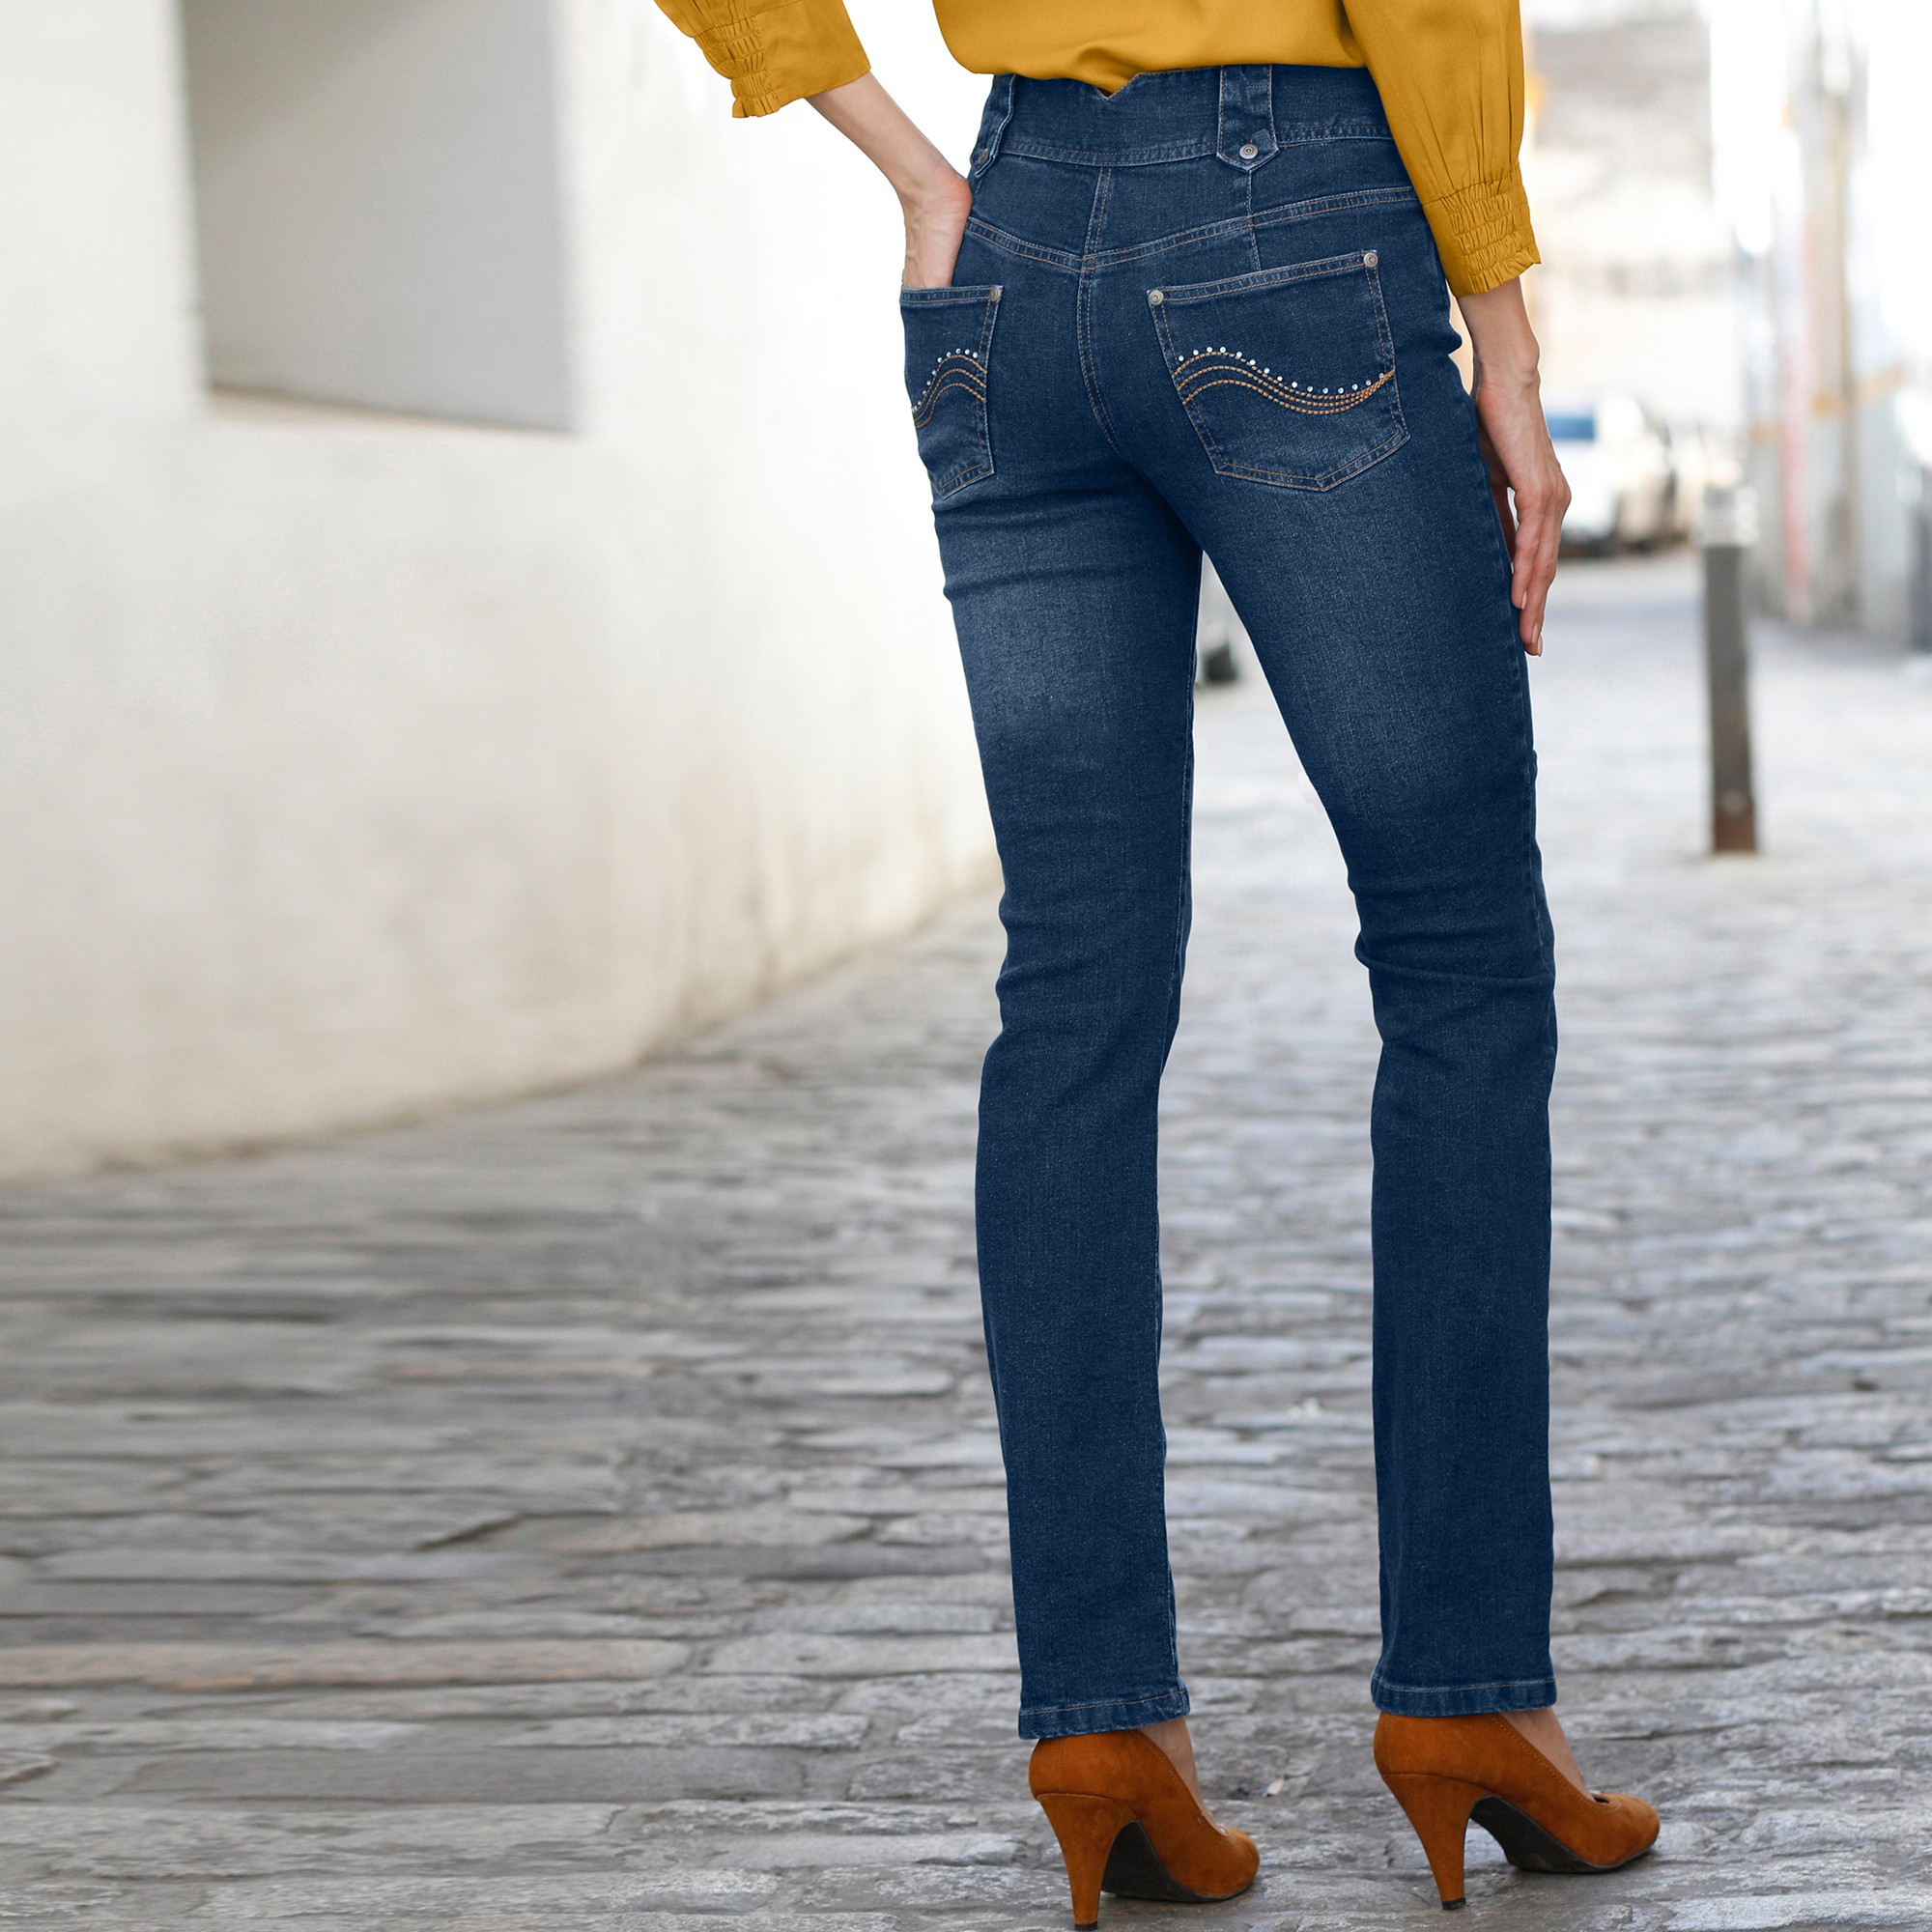 Blacheporte Femme Vêtements Pantalons & Jeans Jeans Slim Corsaire Jean Base Brodée 